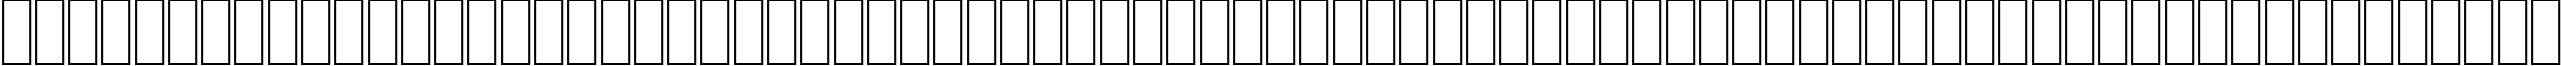 Пример написания английского алфавита шрифтом AGA Juhyna Regular